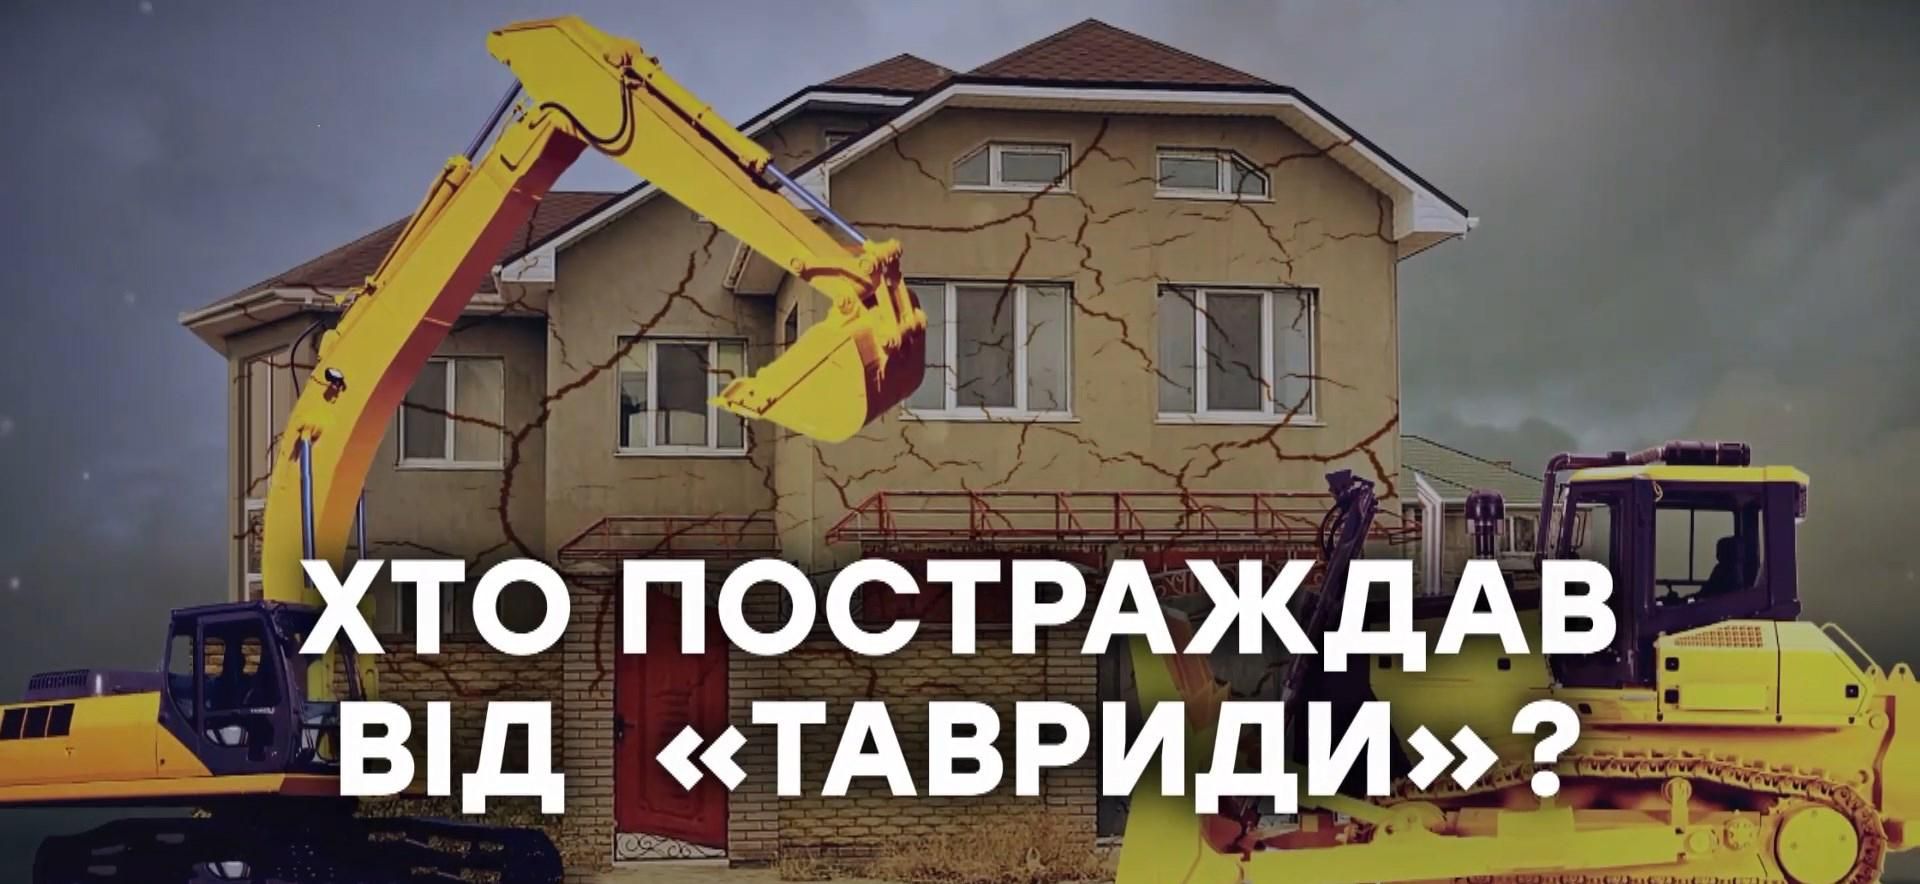 Забрали землю за безцінь: як окупаційна влада обдурила кримчан